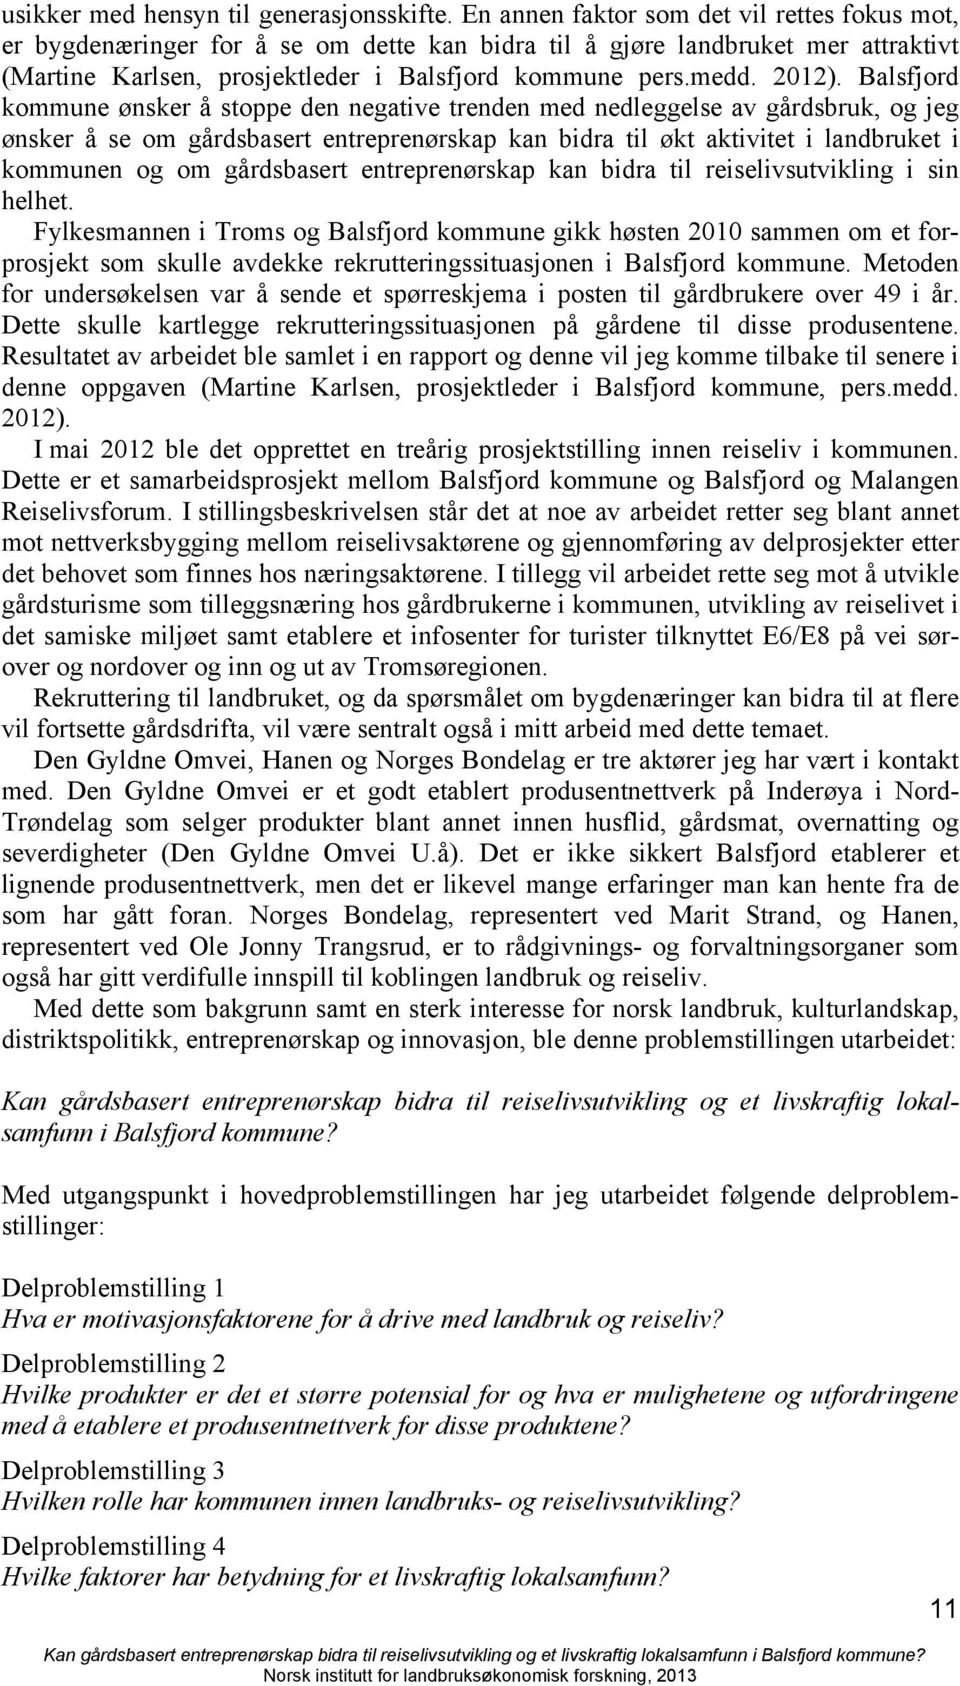 Balsfjord kommune ønsker å stoppe den negative trenden med nedleggelse av gårdsbruk, og jeg ønsker å se om gårdsbasert entreprenørskap kan bidra til økt aktivitet i landbruket i kommunen og om